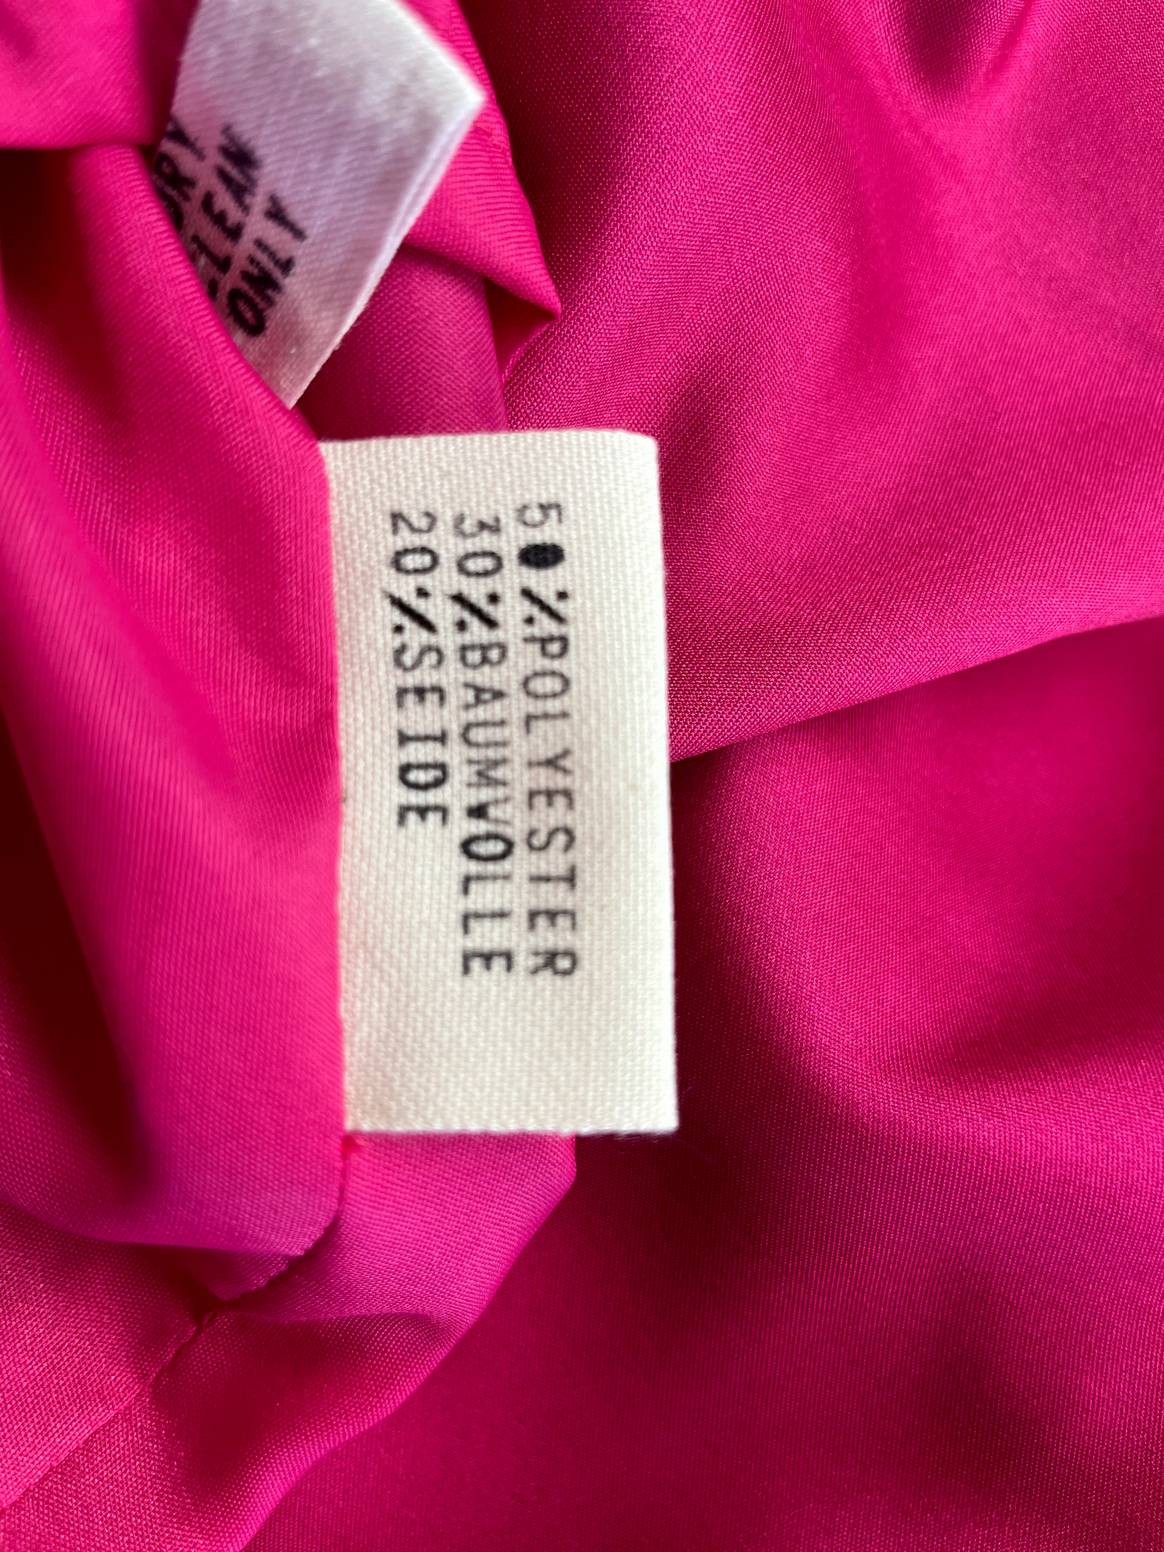 Label voor geüpcyclede kleding volgens de
textieletiketteringsverordening. Afbeelding: Sinah Schlemmer